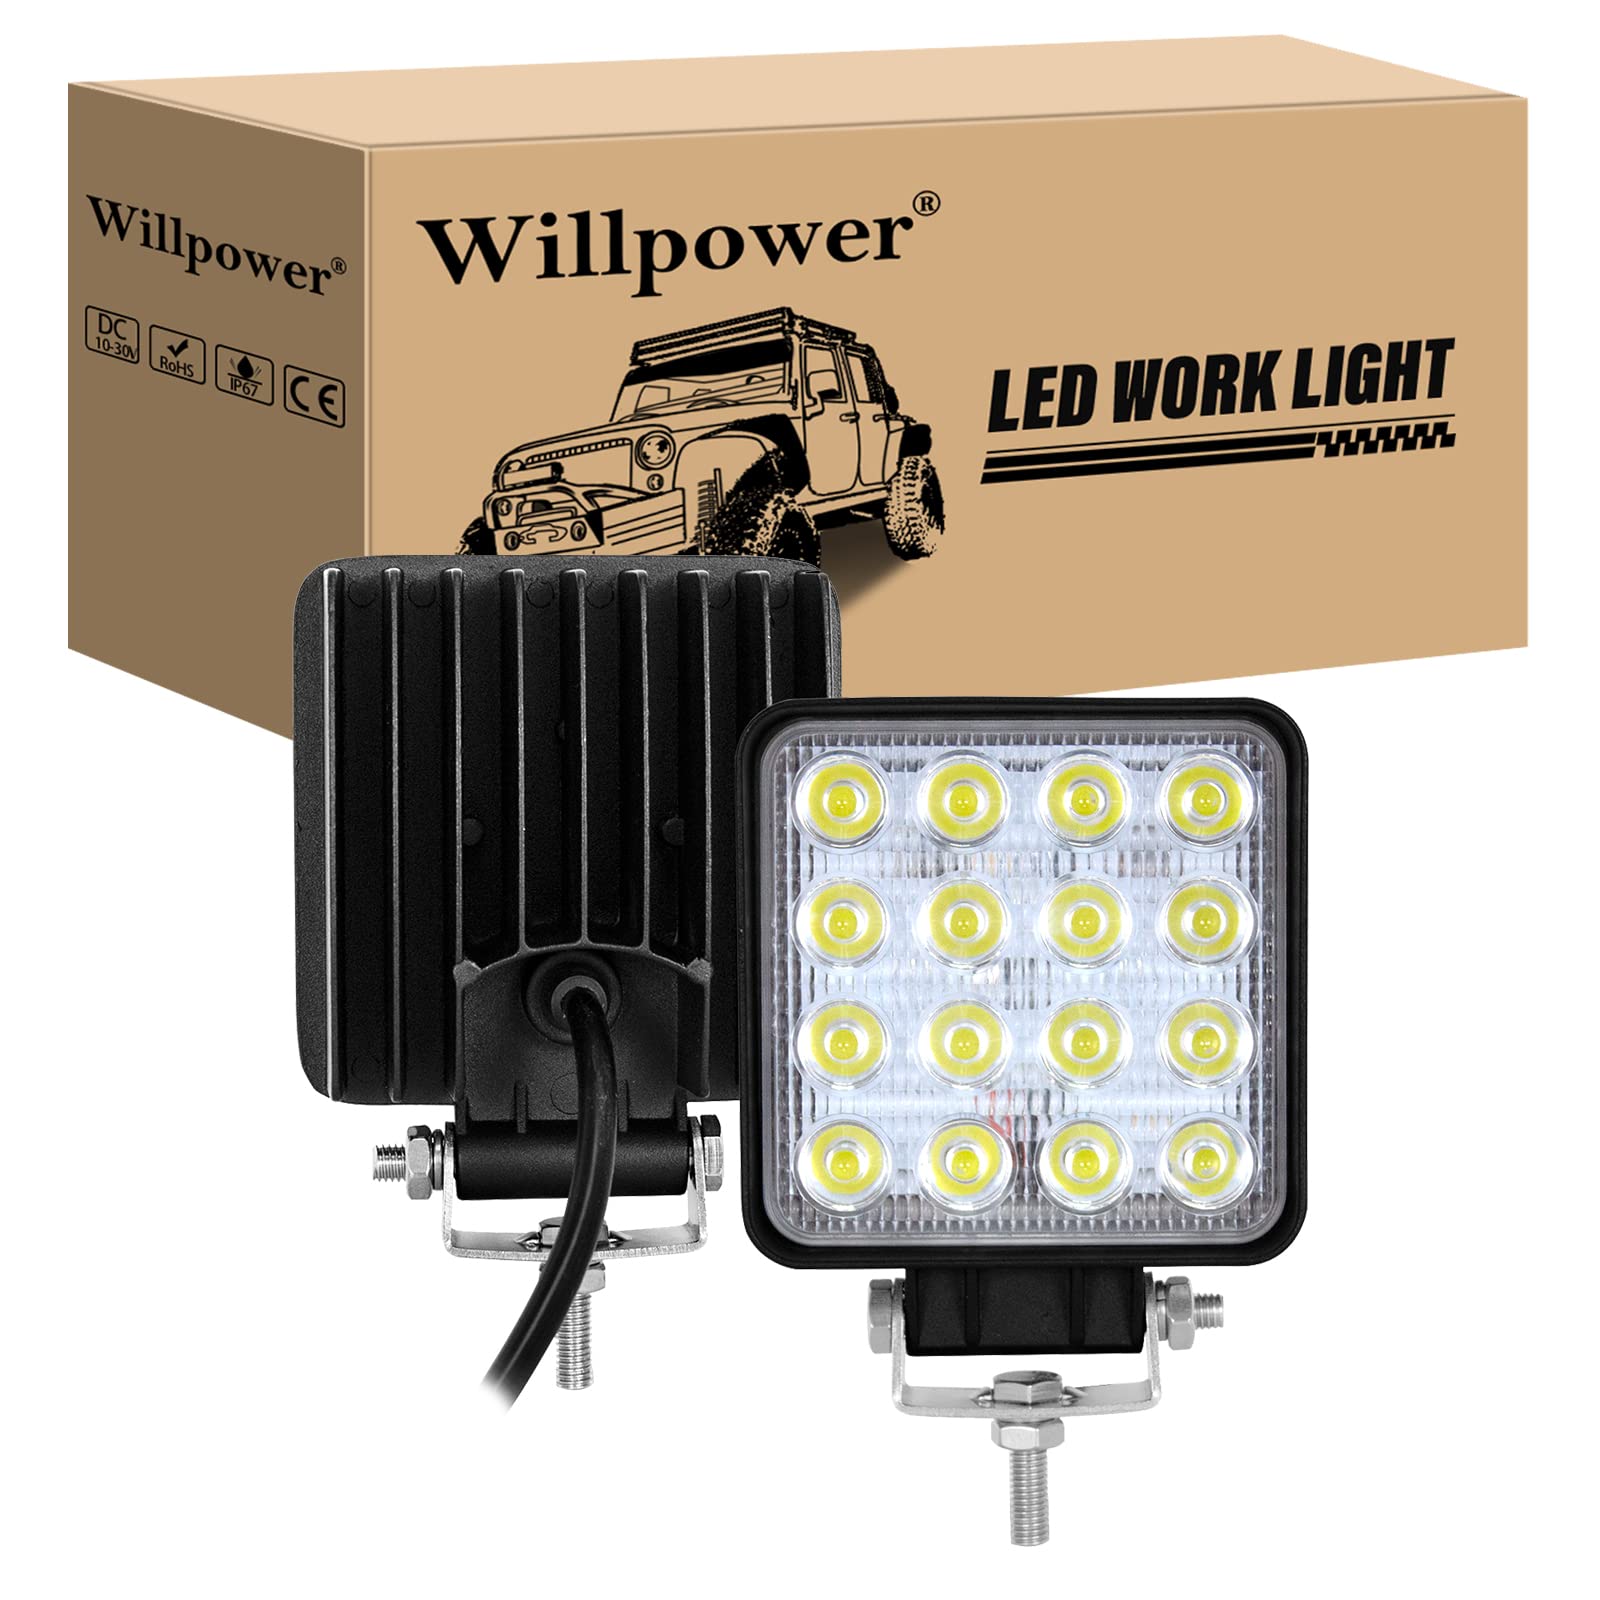 Willpower LED-Arbeitsscheinwerfer, 10,2 cm, 48 W, Flutlicht, LED-Lichtleiste, 12 V, 24 V, wasserdicht, Offroad-Fahrlicht, Nebelscheinwerfer für LKW, Traktor, Auto, Allrad, ATV, UTV, SUV, Boot, von Willpower